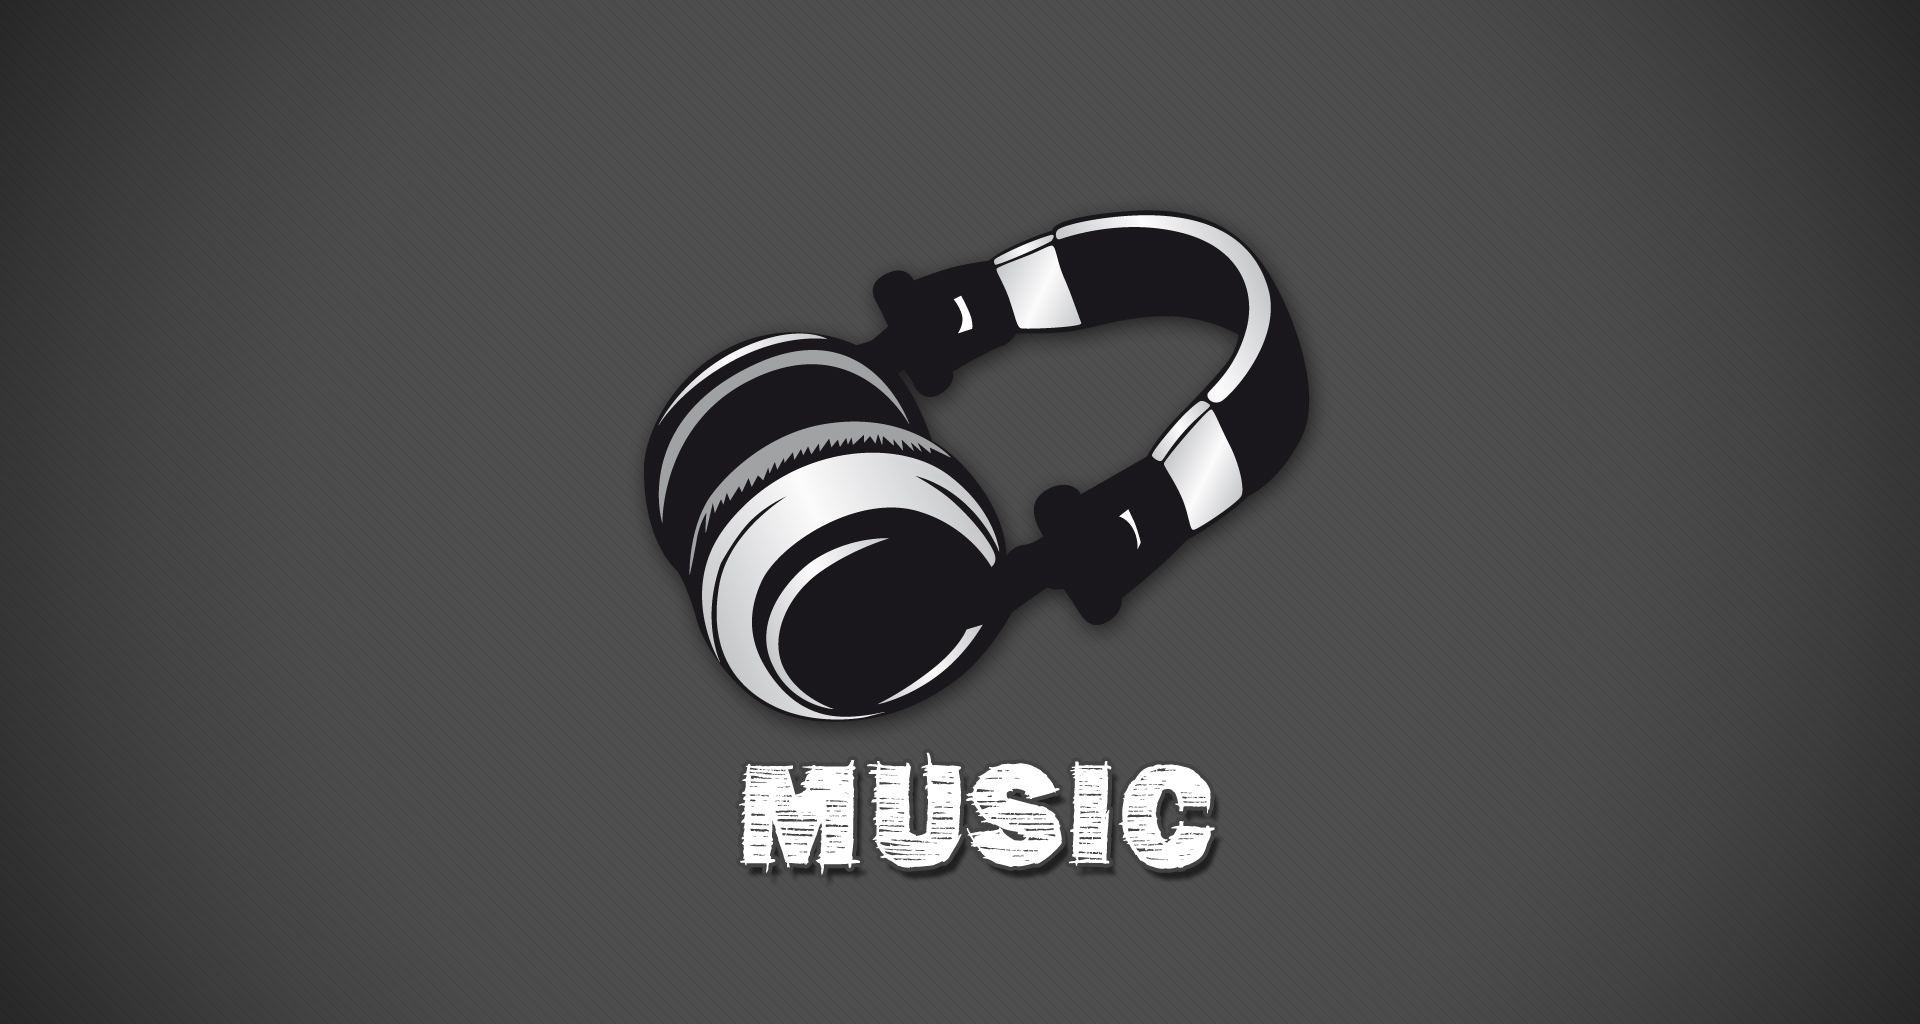 Pro Music logo. Car Music logo.